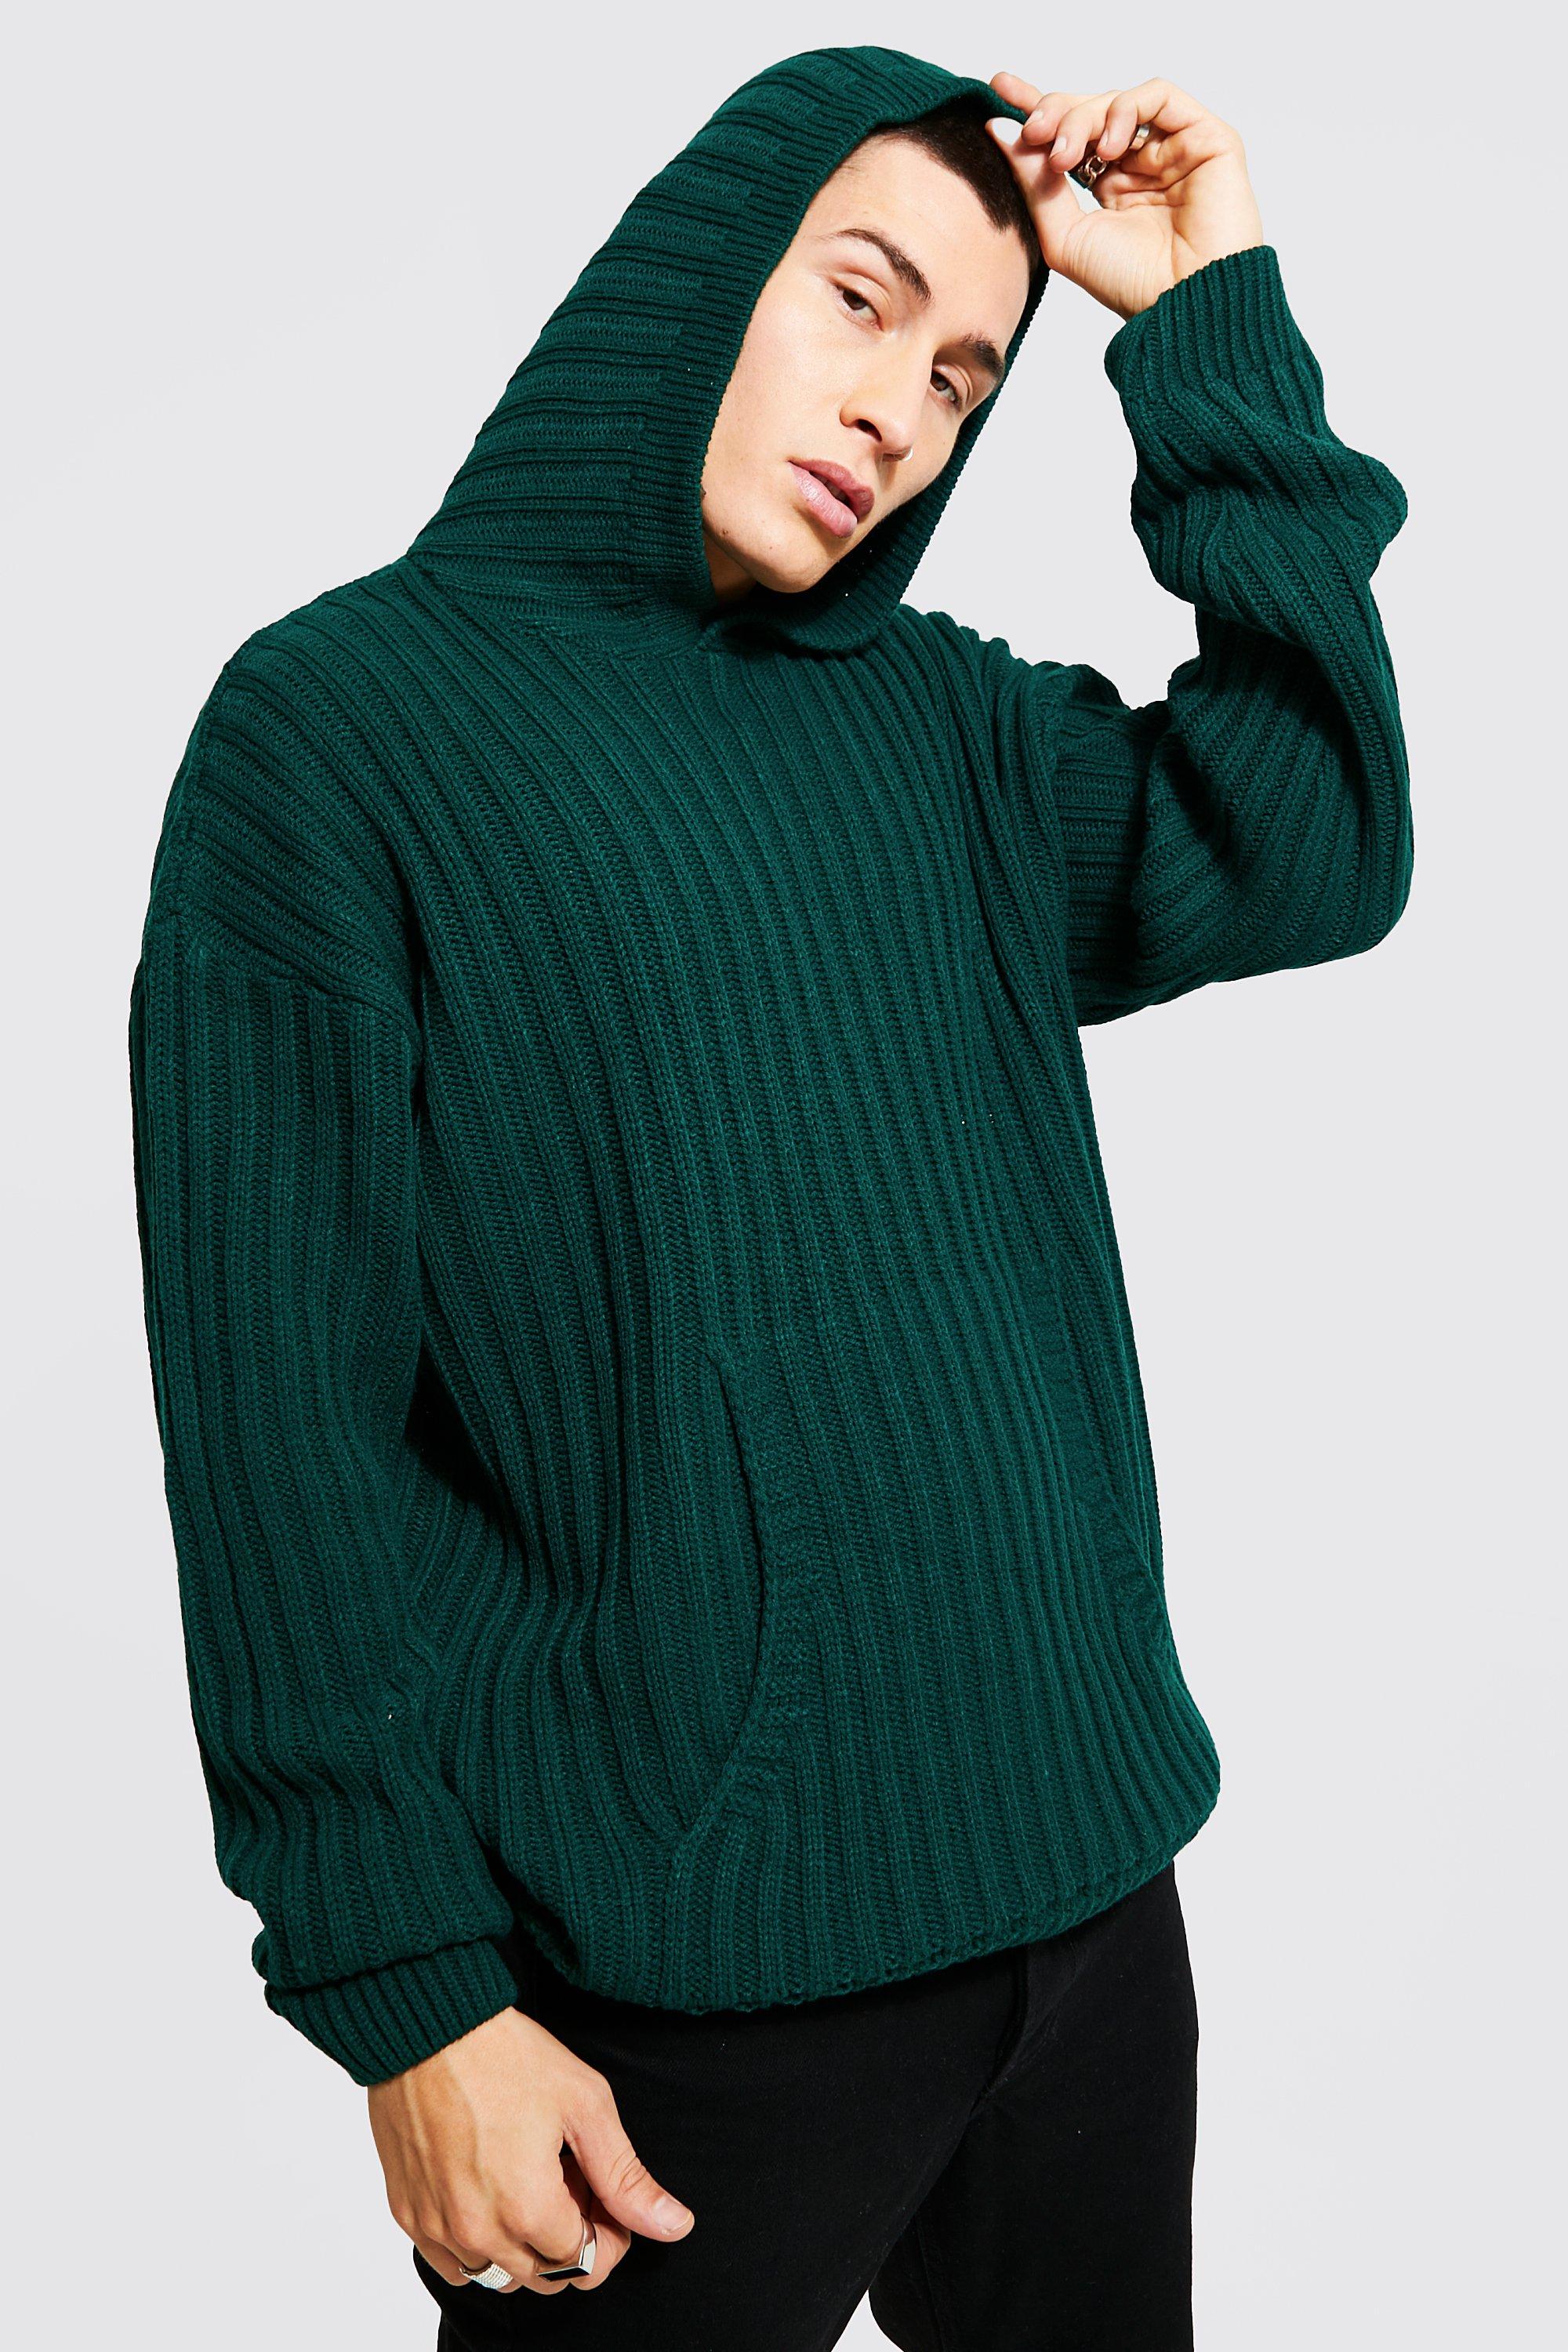 https://media.boohoo.com/i/boohoo/amm13923_dark%20green_xl_4/male-dark%20green-oversized-chunky-ribbed-knitted-hoodie